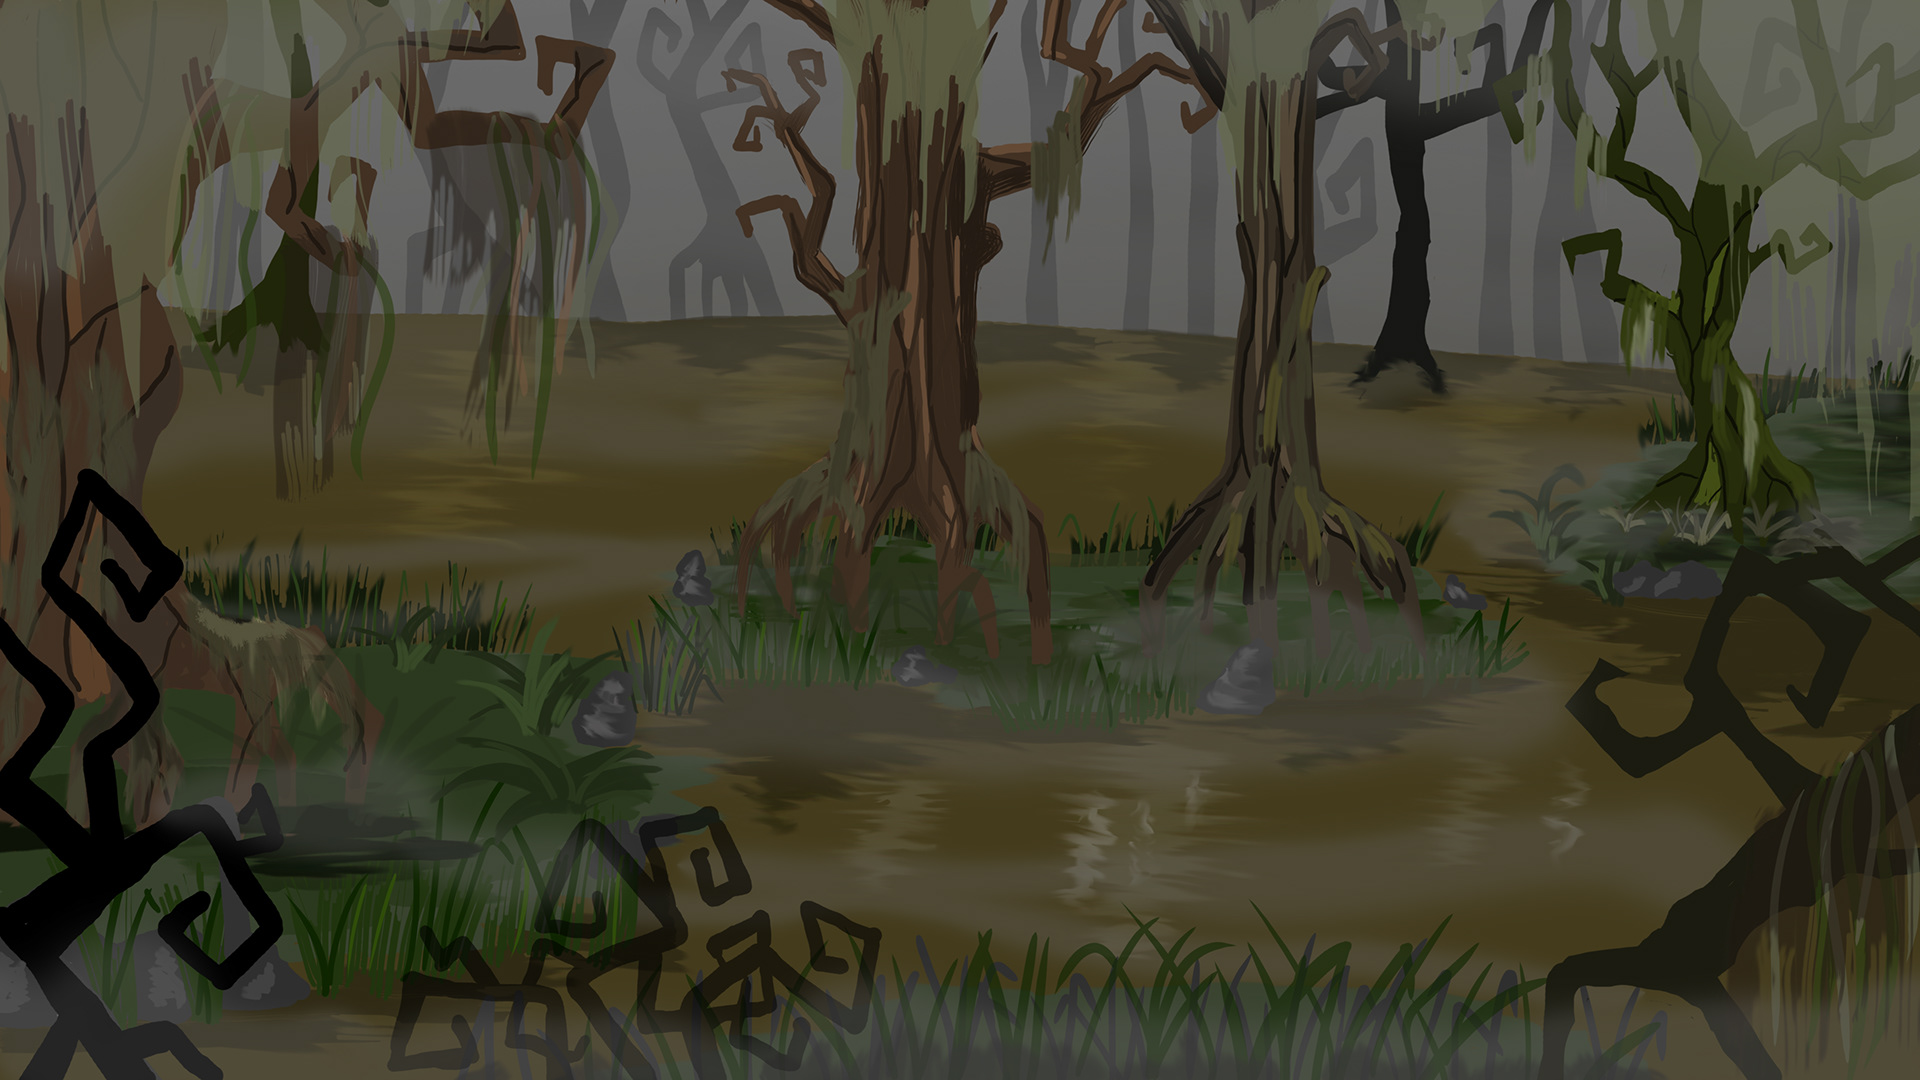 Shrek's swamp. Image - Behance